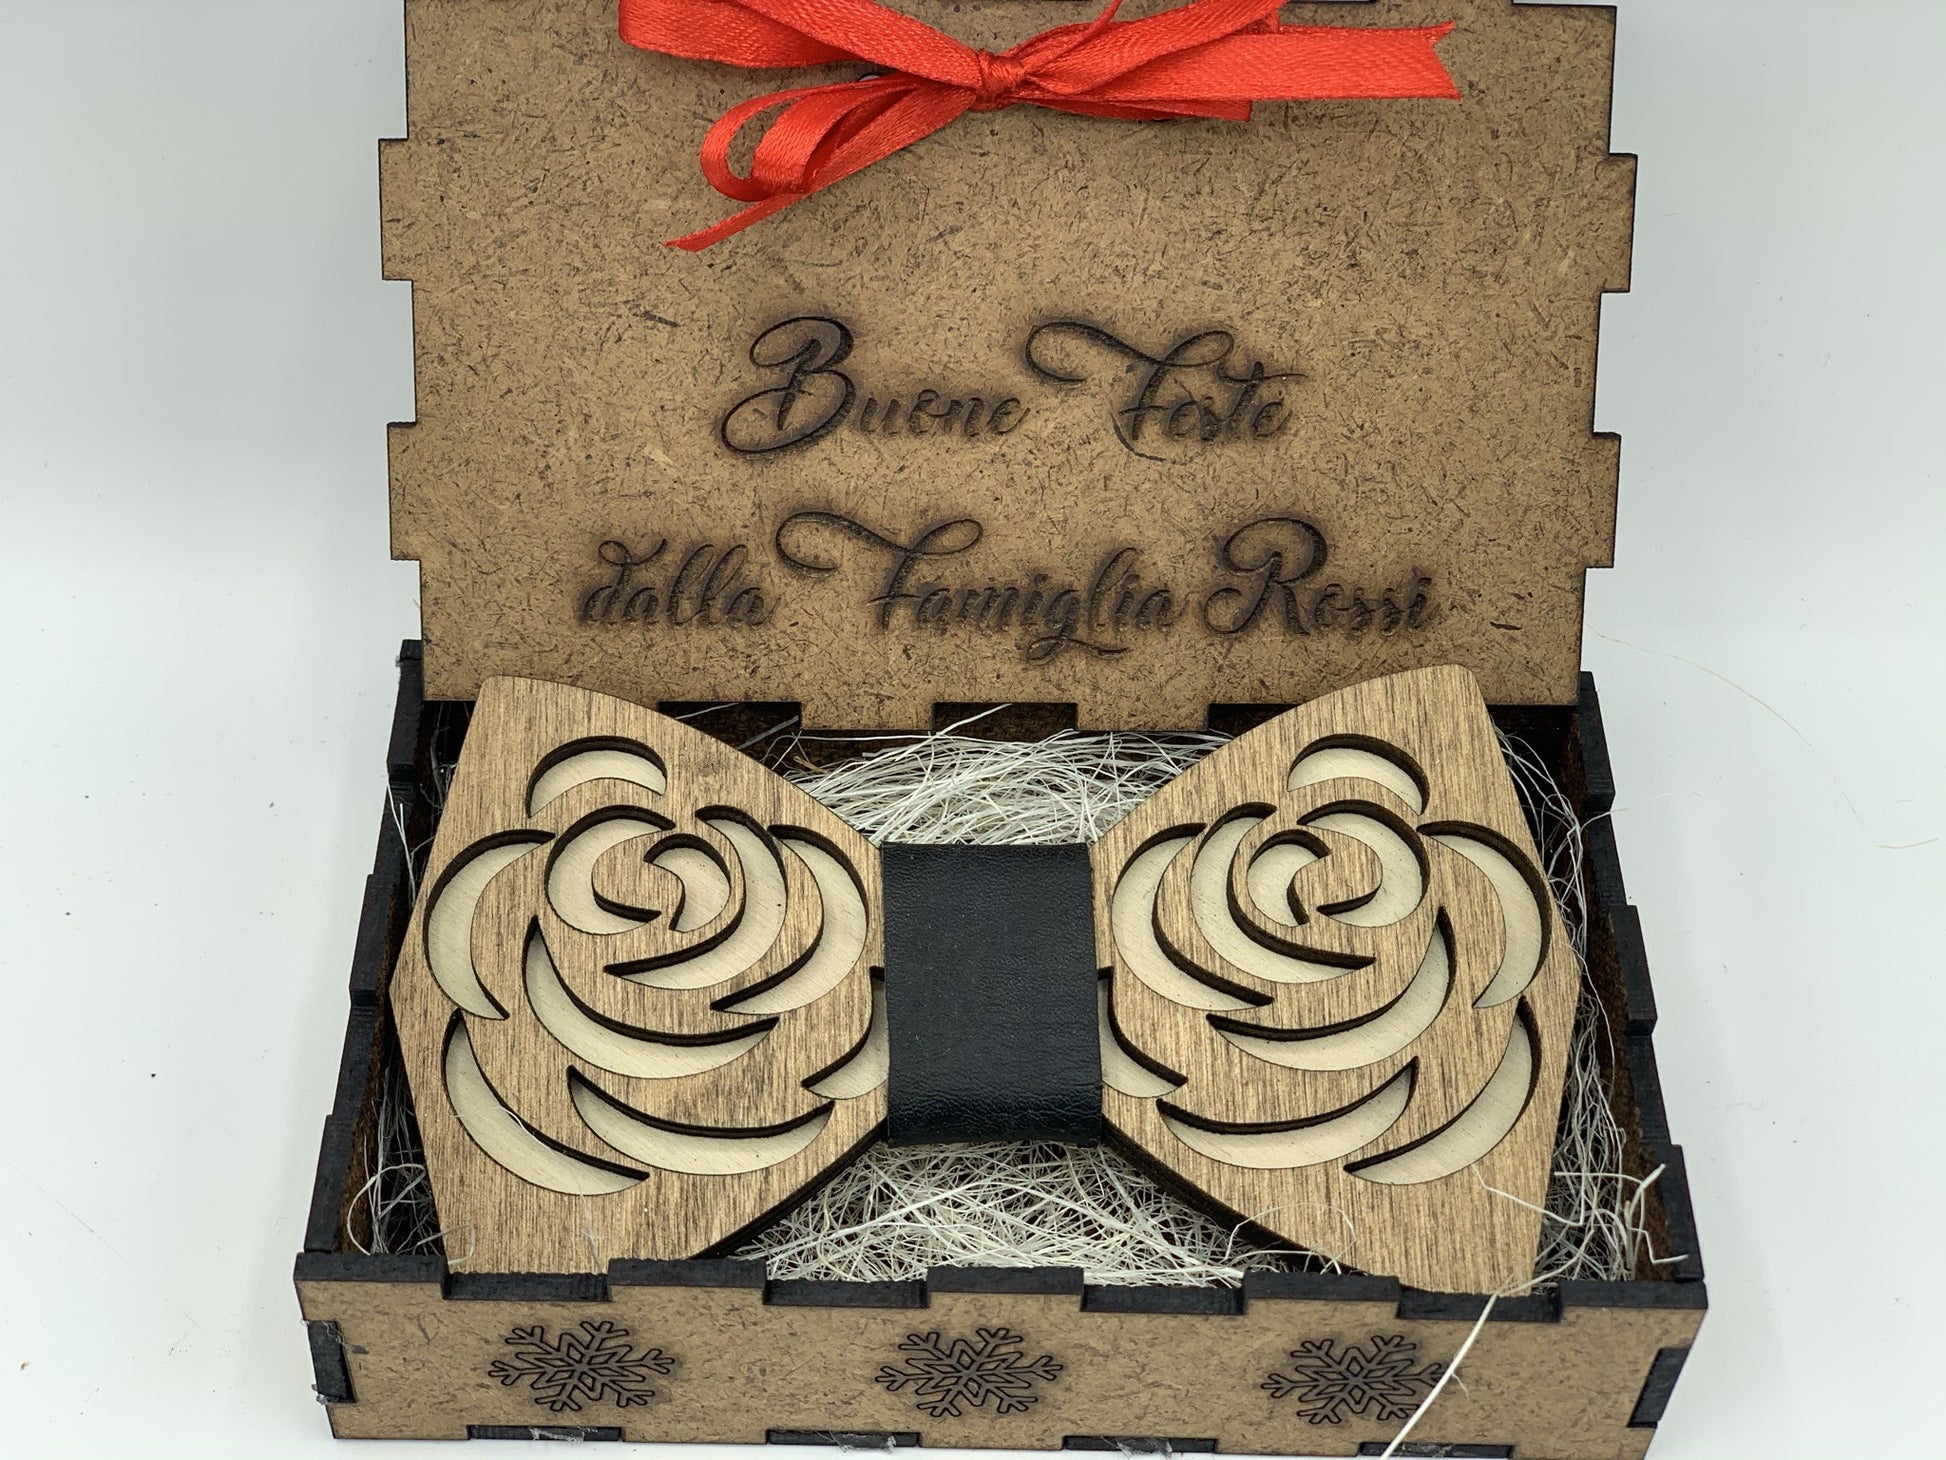 Papillon in legno Rose con scatola regalo personalizzata Idea's Cottage